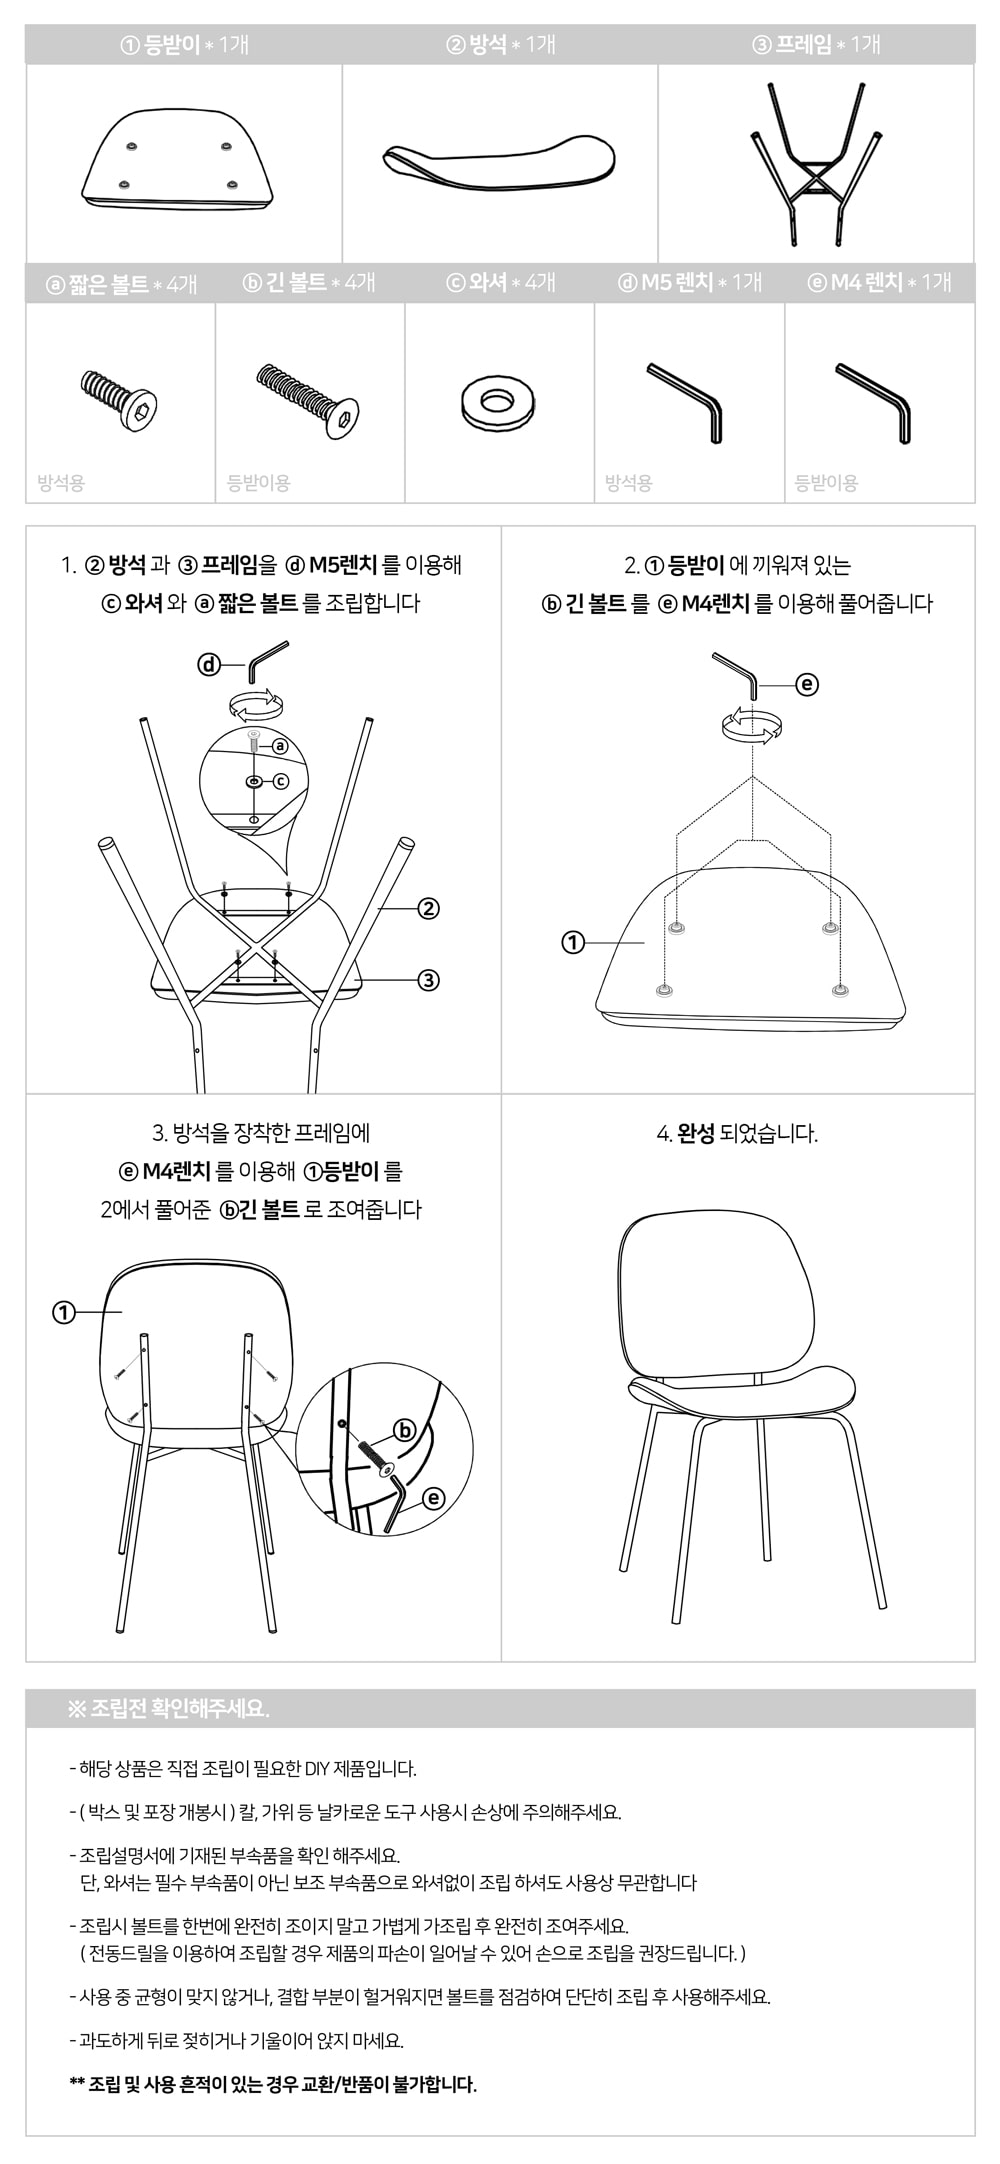 피카소가구 브린체어 아트웨이 / 키워드 : 디자인체어, 인테리어체어, 철재체어, 패브릭체어, 디자인의자, 인테리어의자, 철재의자, 패브릭의자, 미드센추리모던, 블랙프레임